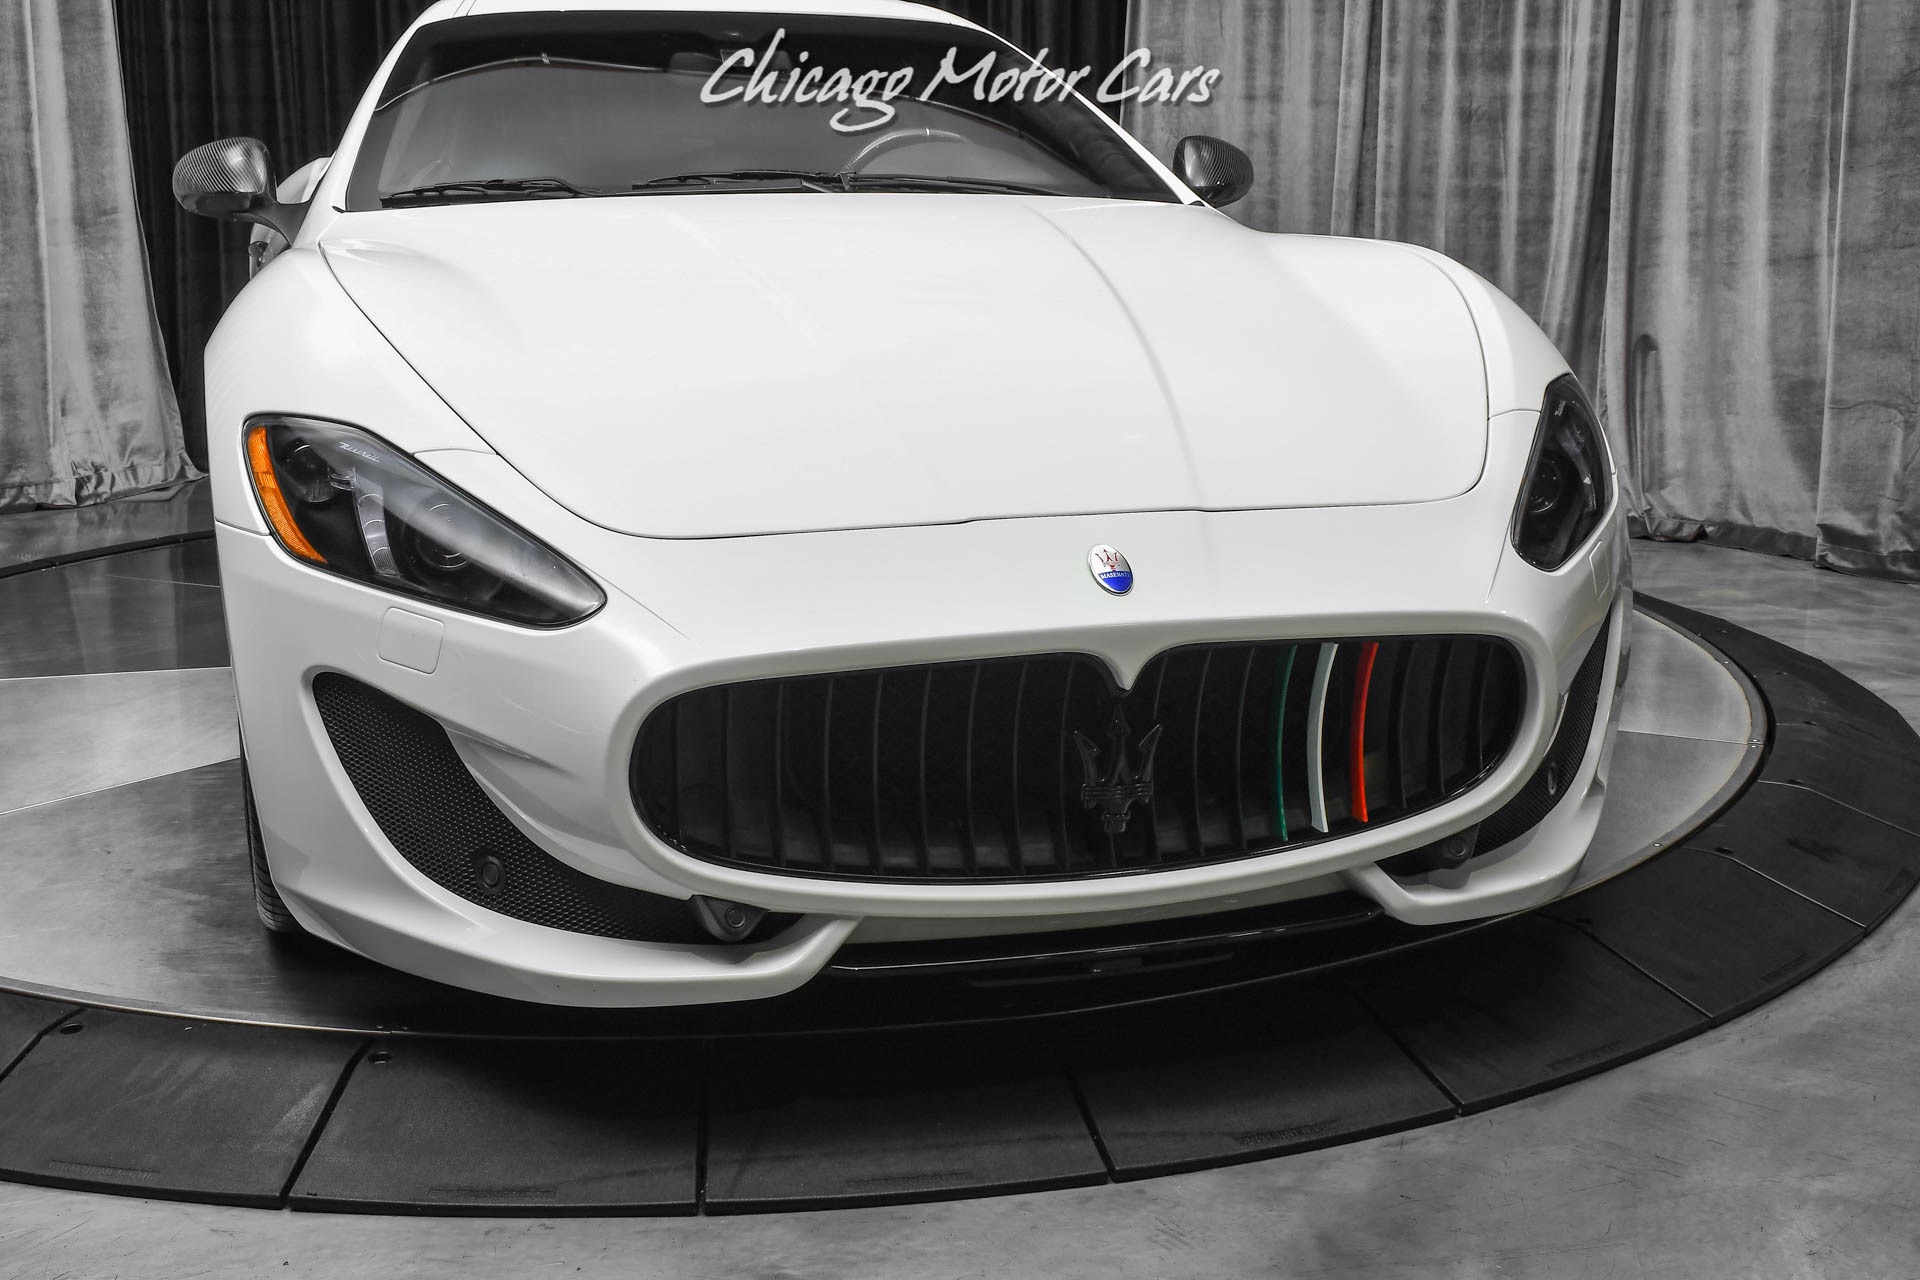 Used-2015-Maserati-GranTurismo-MC-ONLY-12581-MILES-FULL-CARBON-FIBER-PKG